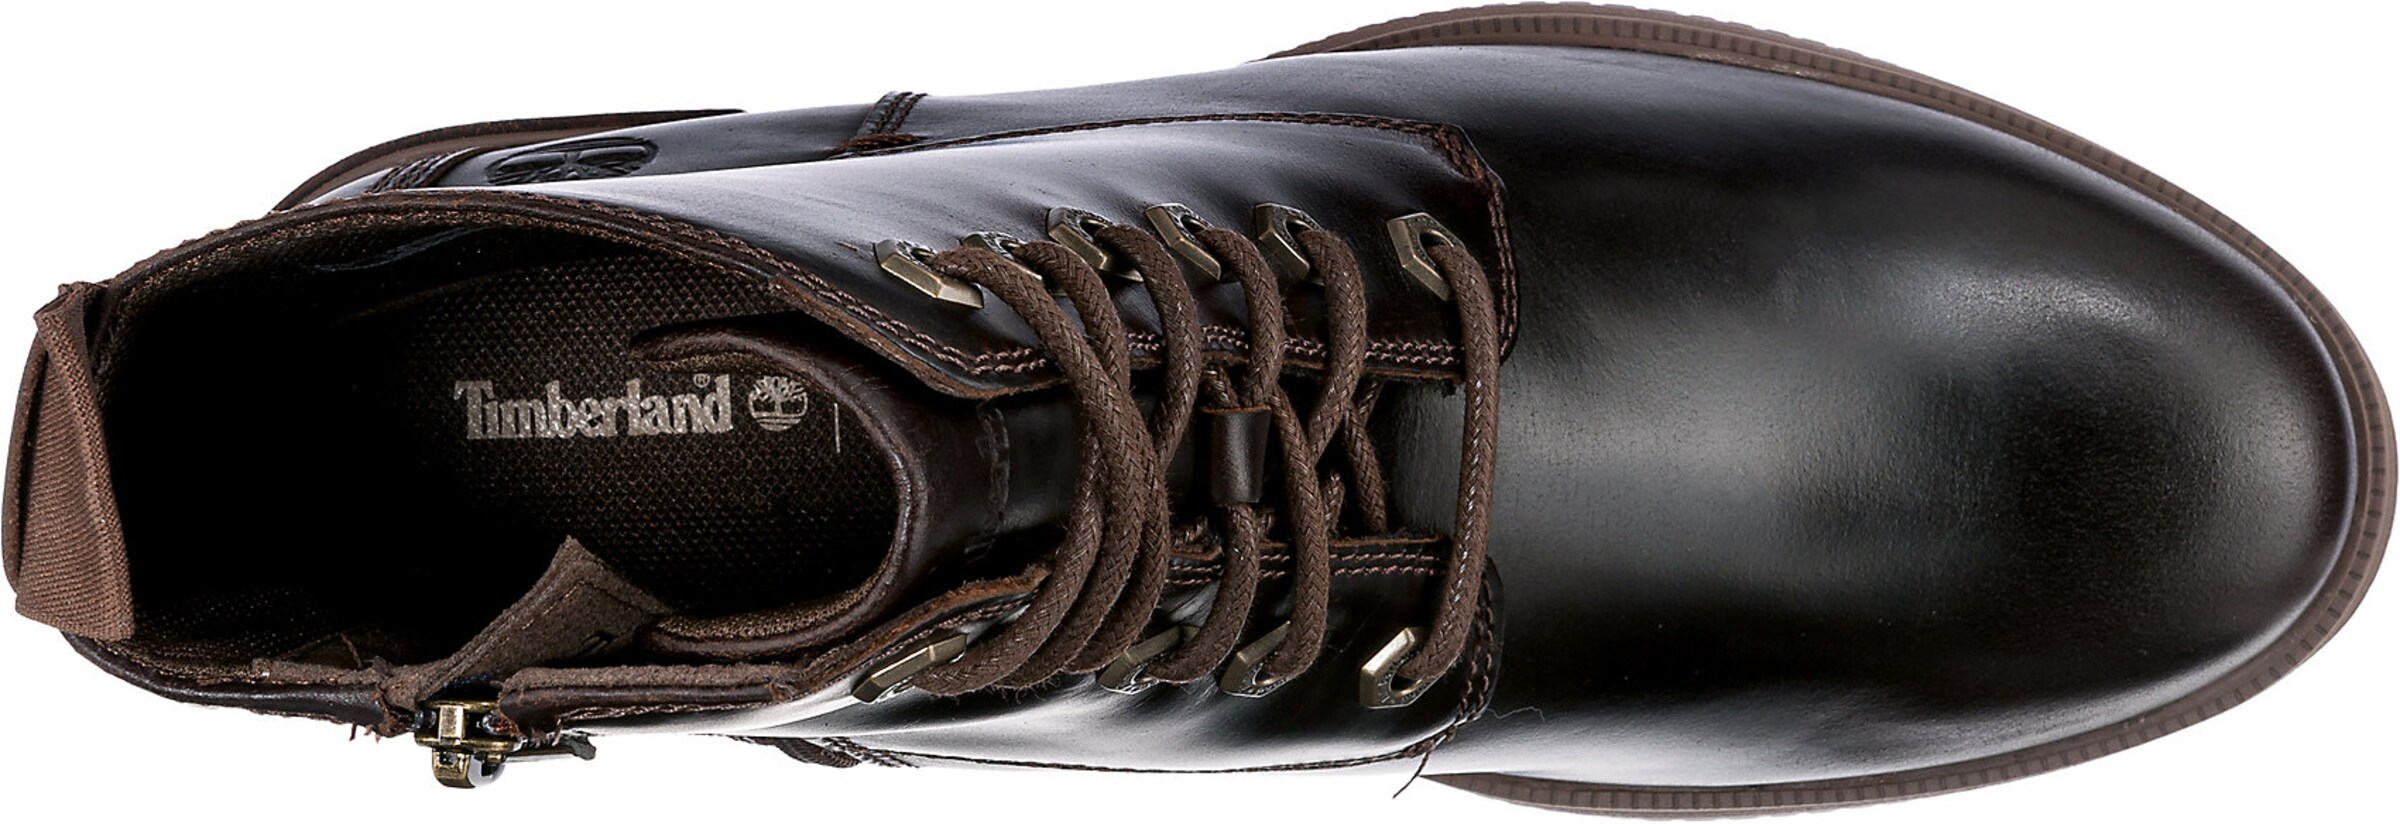 Chaussures Bottines à lacets Dalston Vibe TIMBERLAND en Brun Foncé 